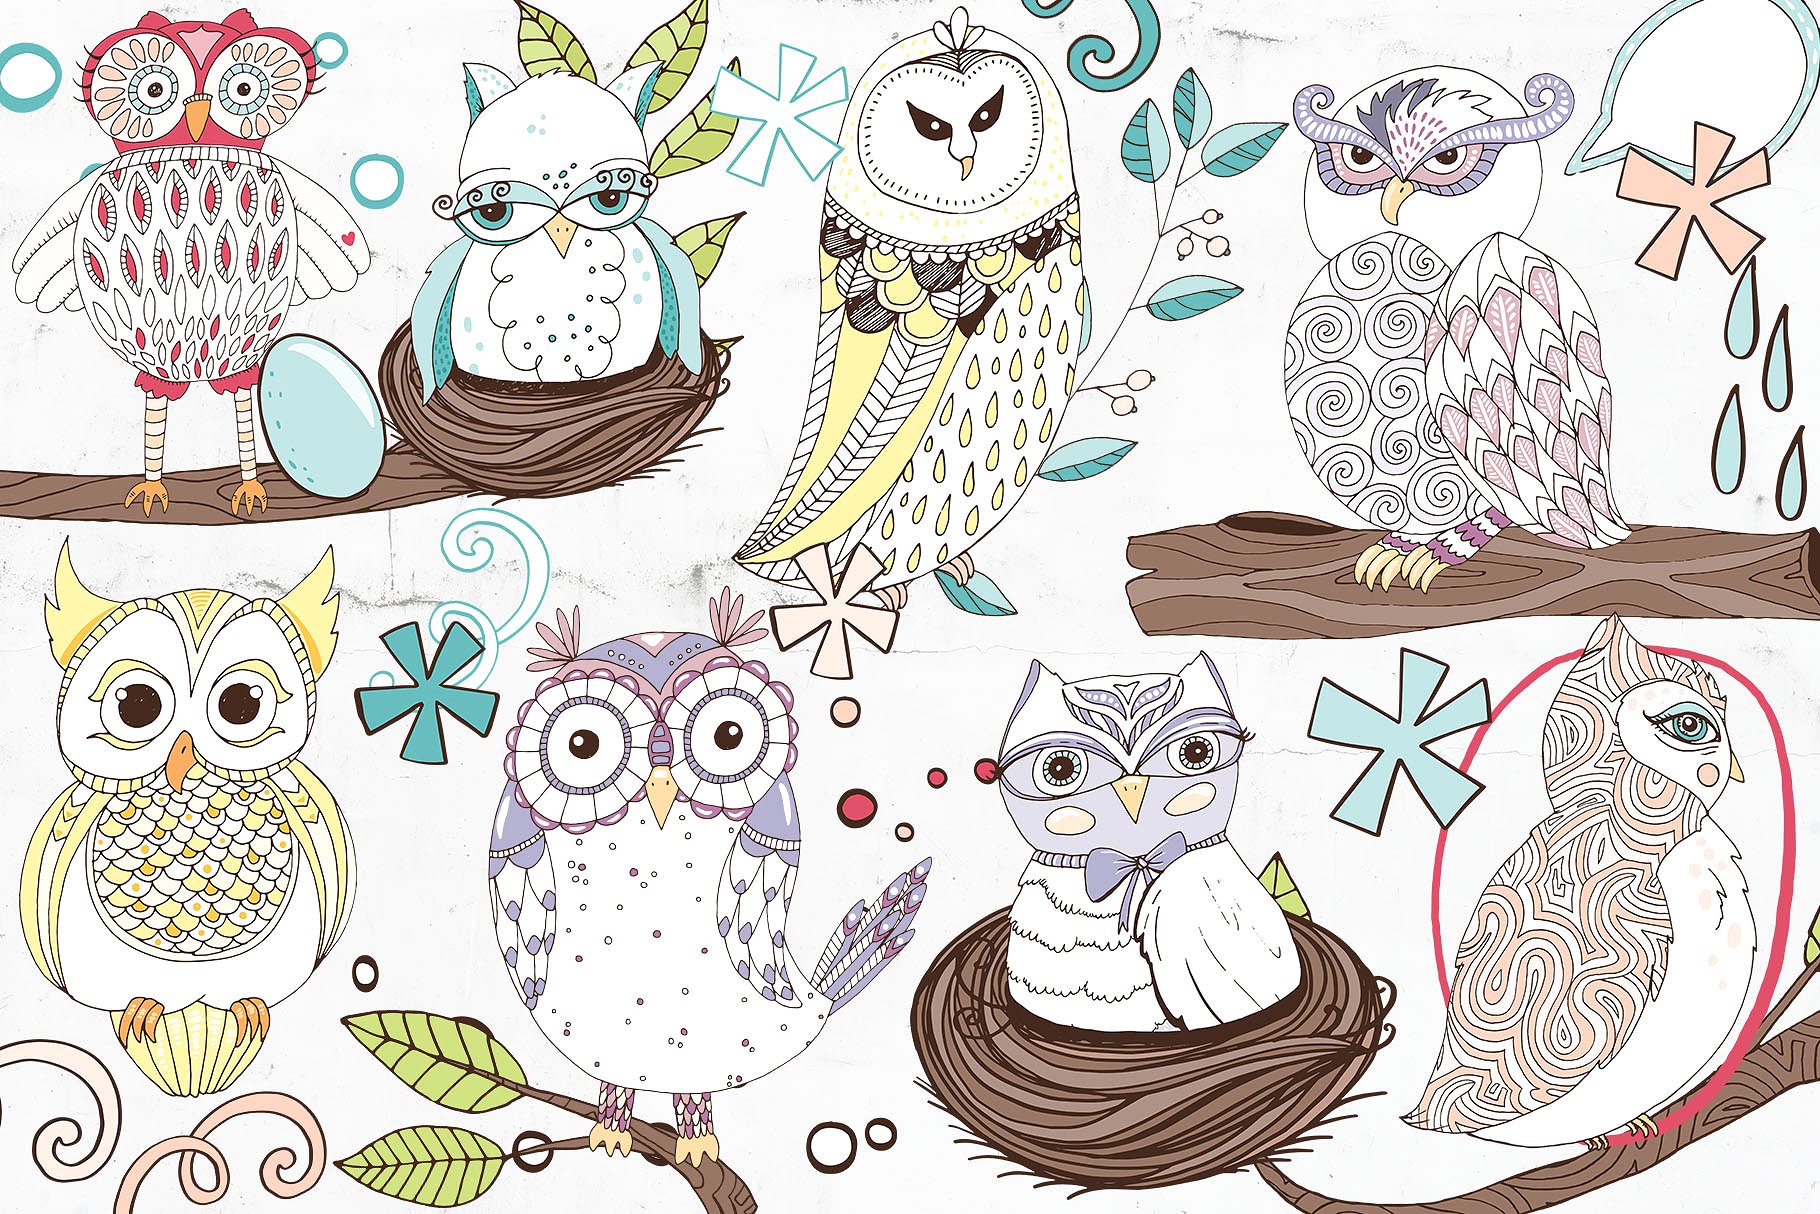 可爱猫头鹰矢量剪切画素材 Cute Owl Graphics Set插图7